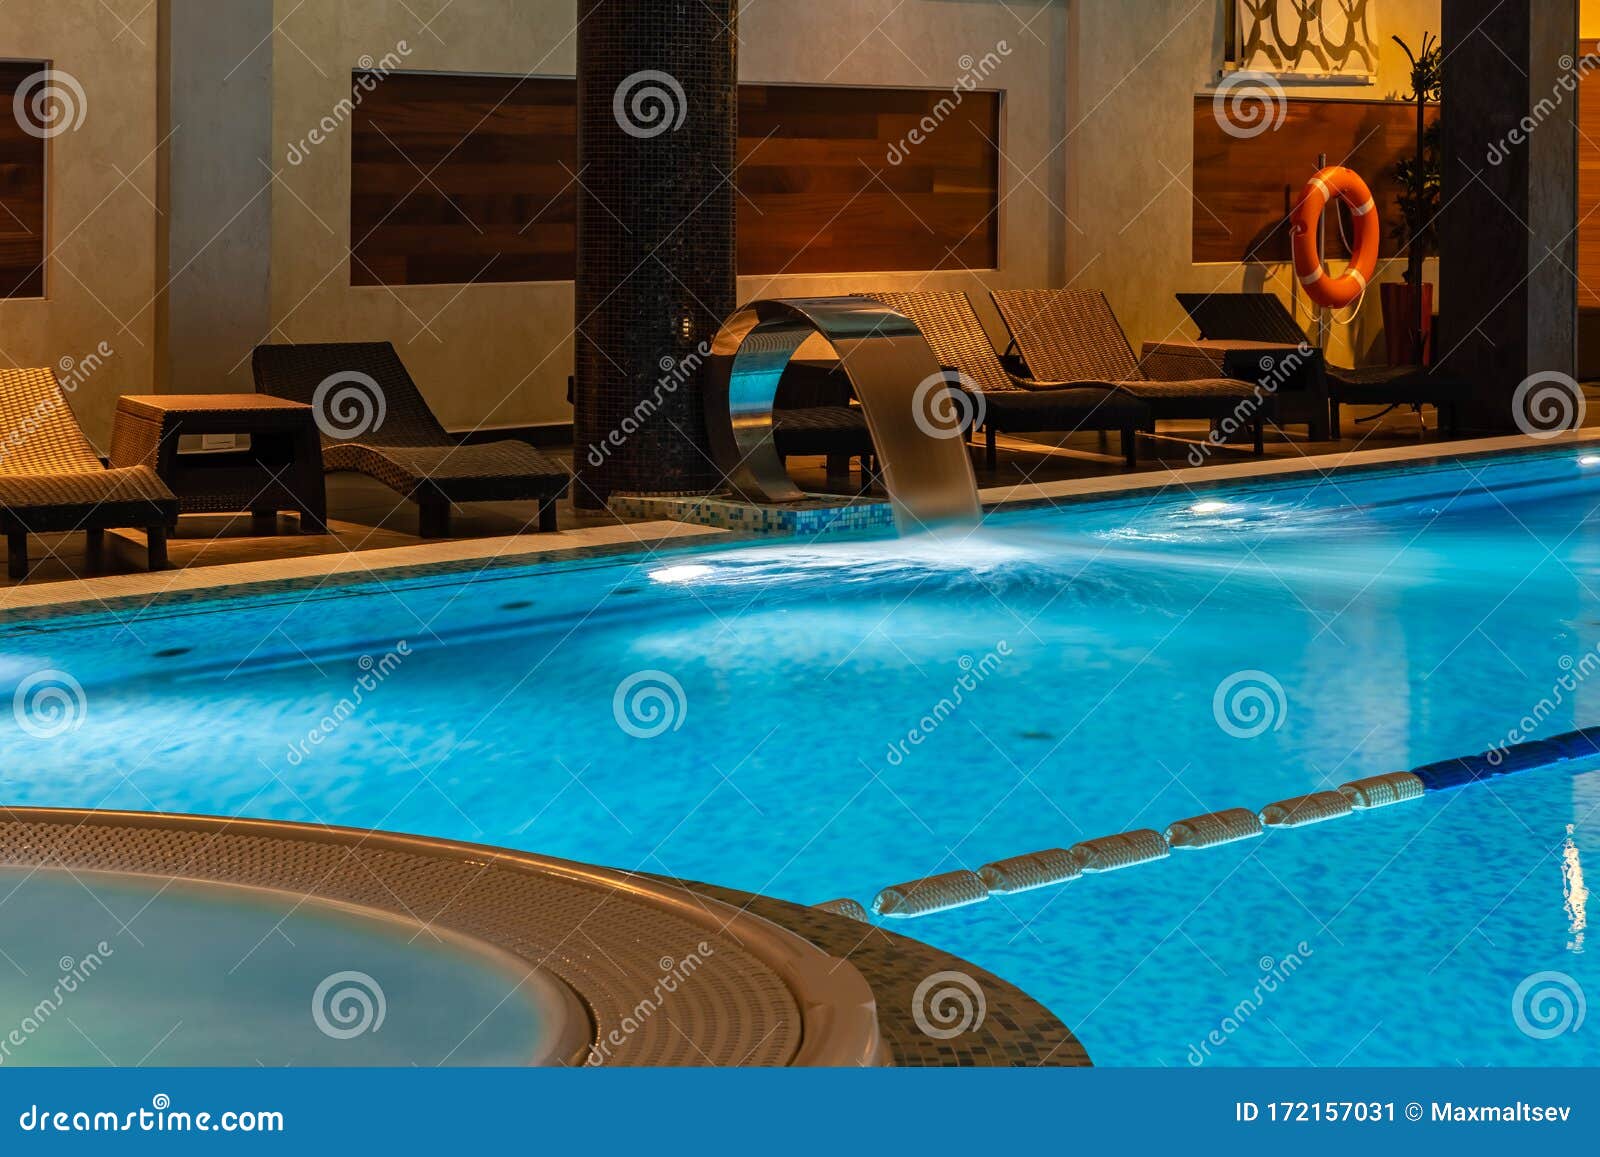 Không gian bể bơi cao cấp sẽ khiến bạn ngất ngây bởi cảm giác thư giãn và hưởng thụ đích thực. Hãy đến và chiêm ngưỡng vẻ đẹp hoàn hảo của bể bơi cao cấp này. 